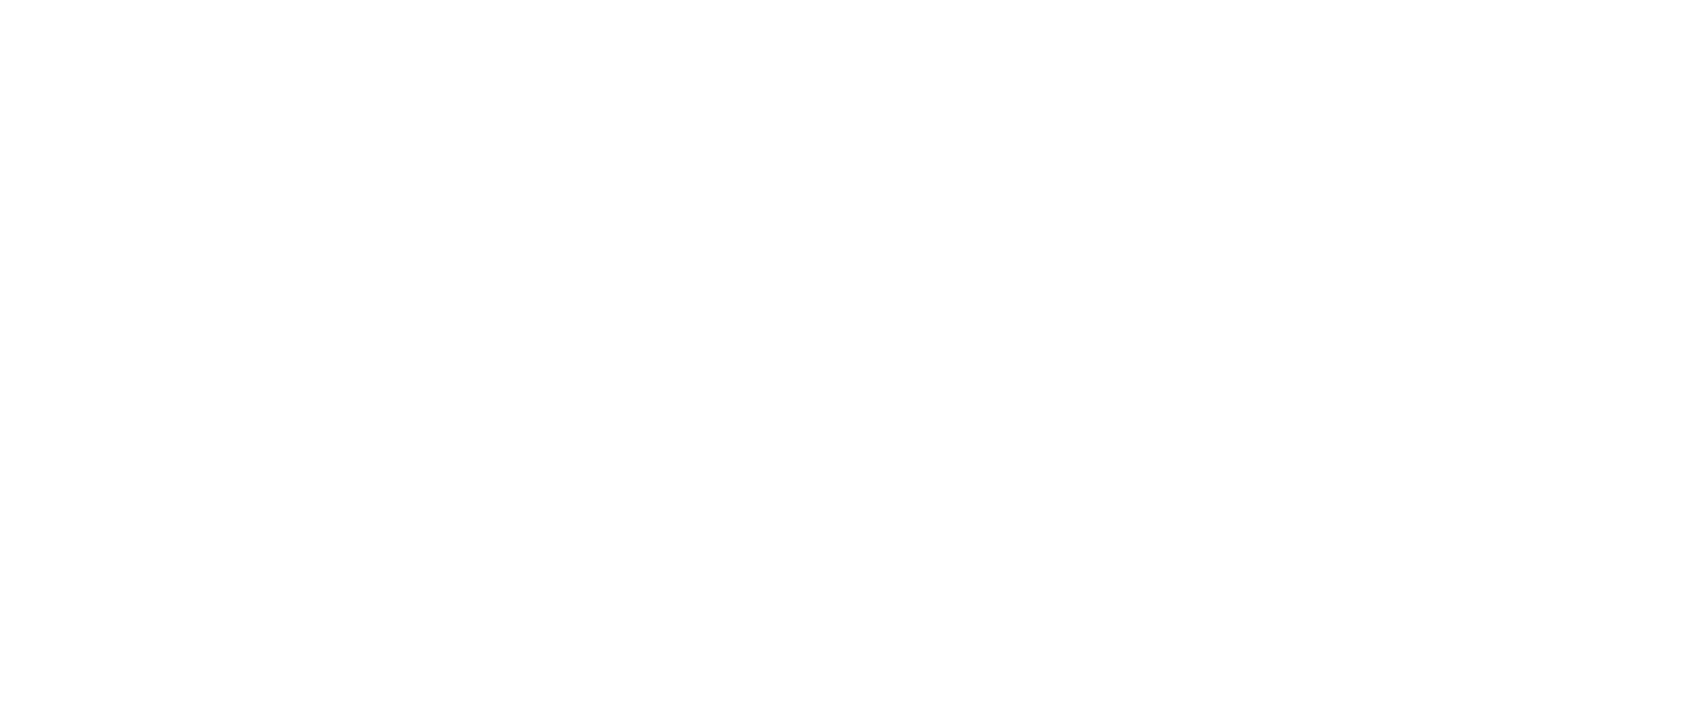 IWP Academy